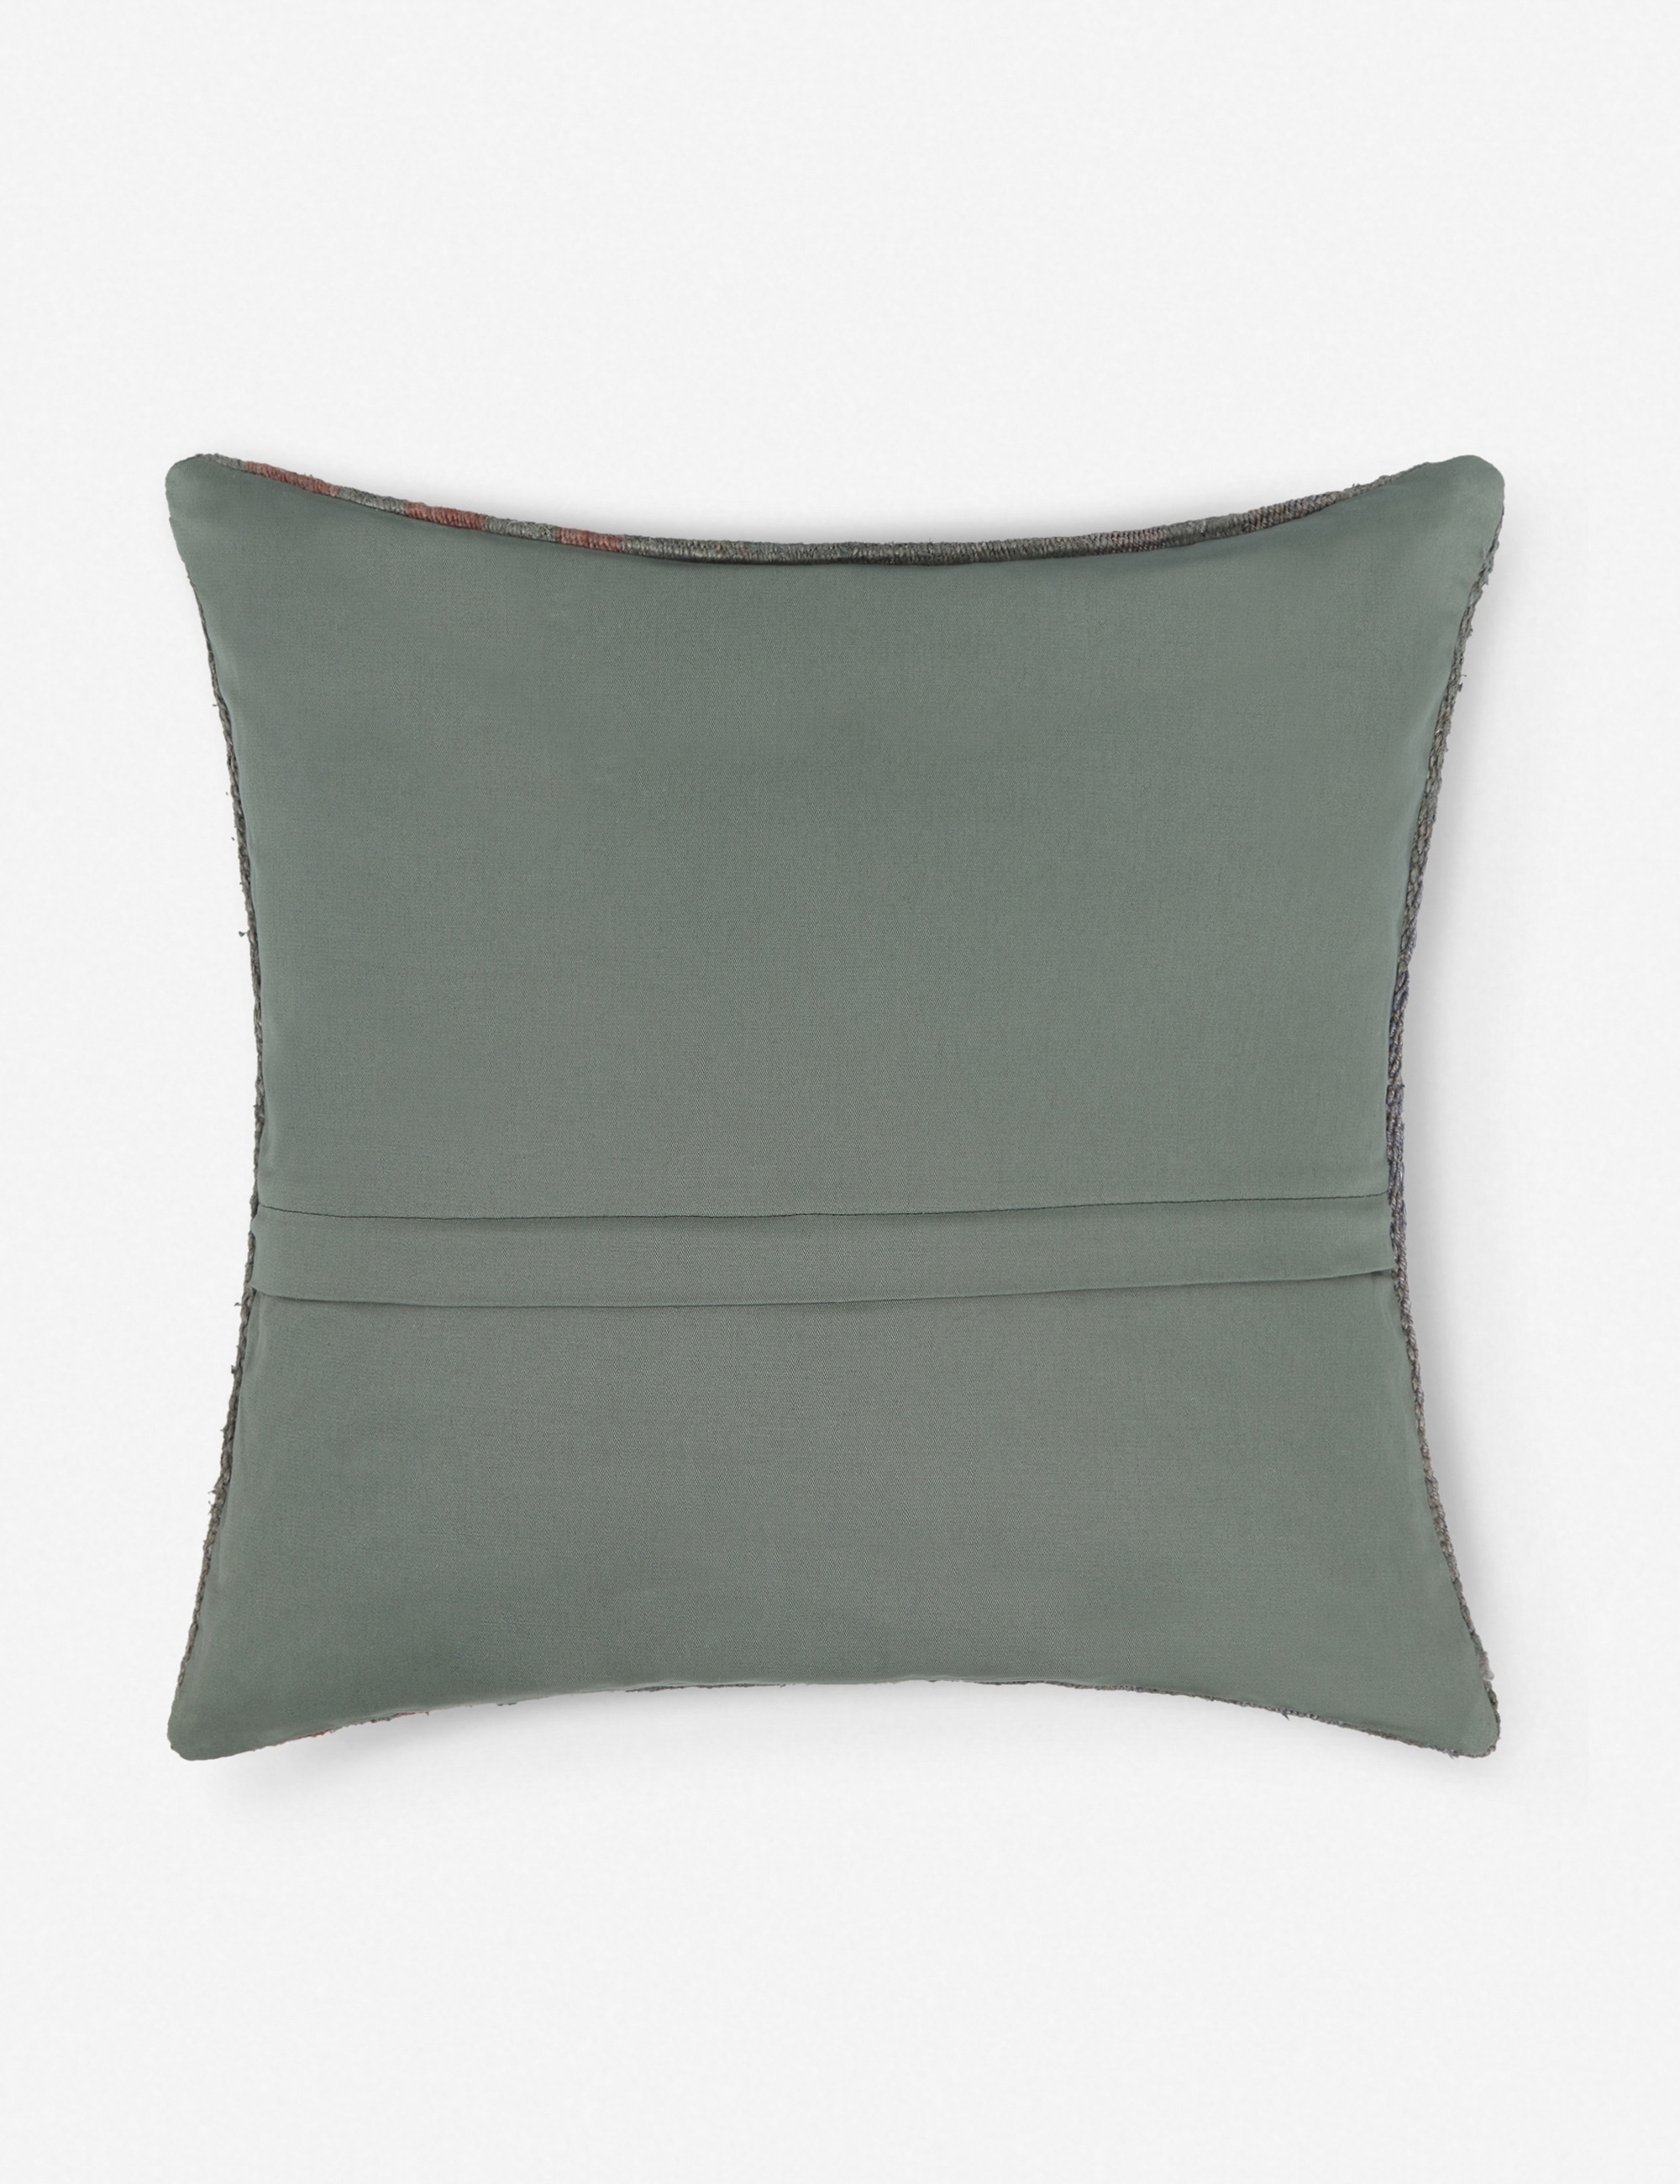 Jale Vintage Hemp Pillow - Image 2